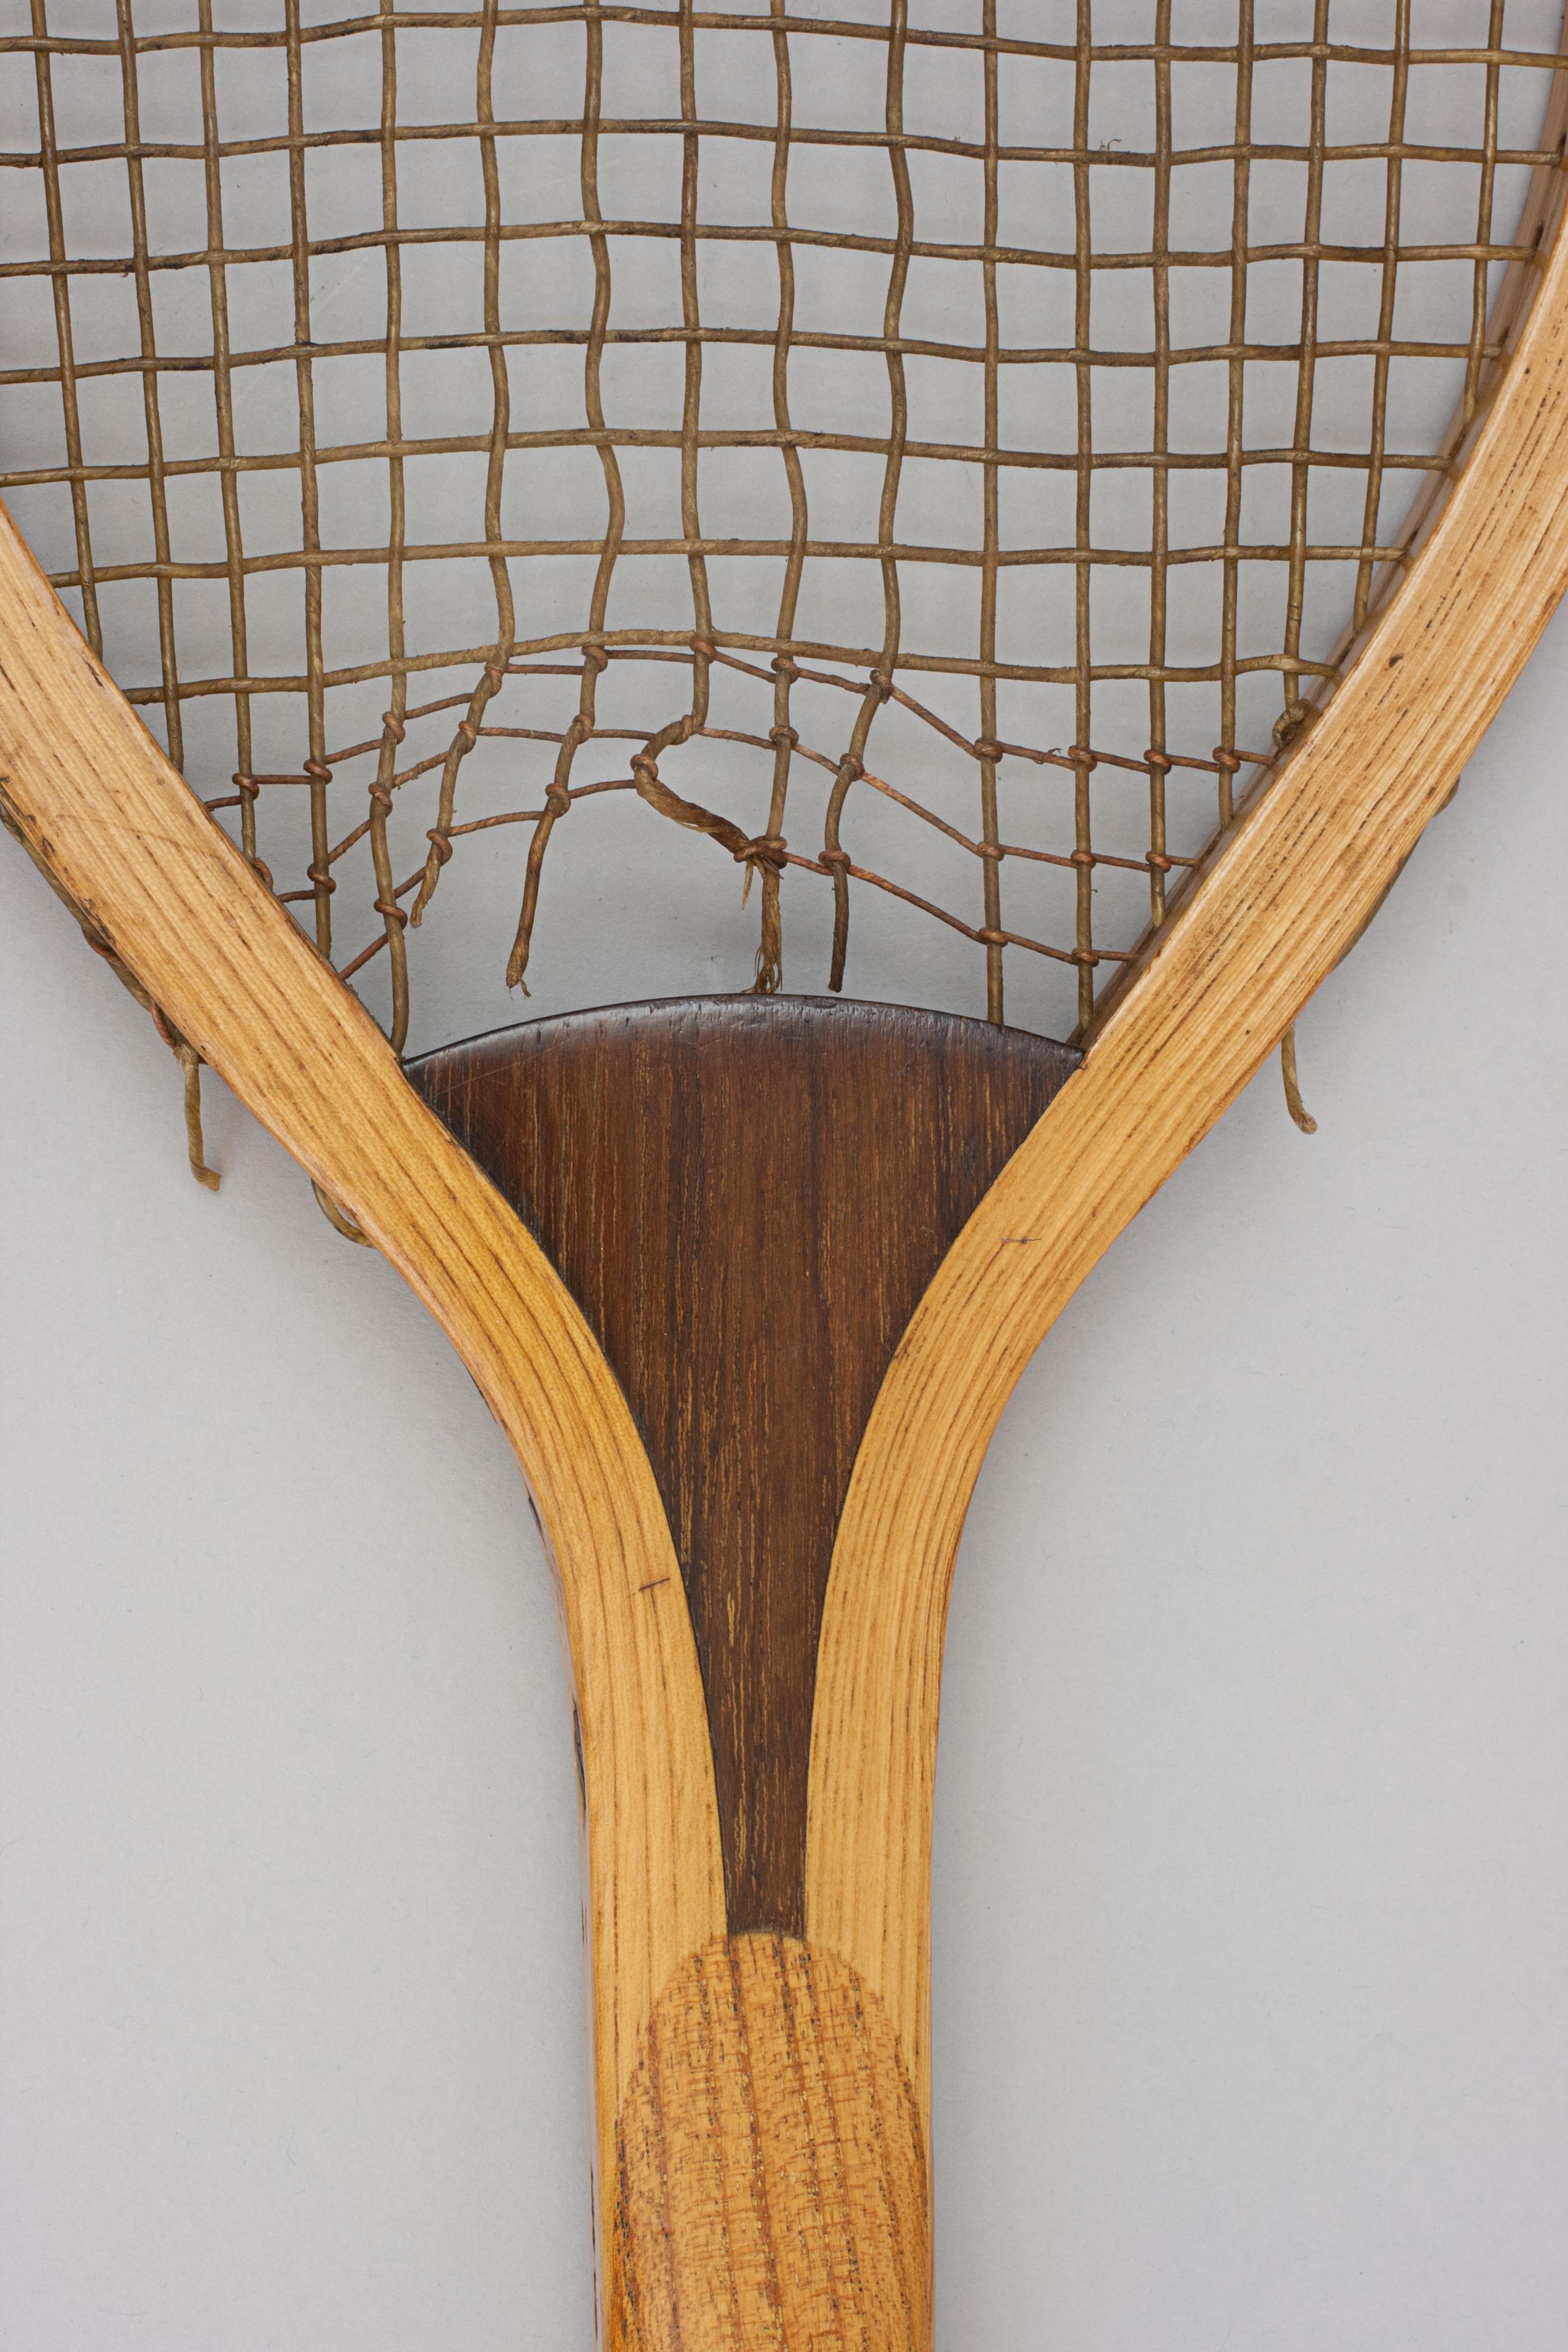 British Wooden Lawn Tennis Racket, Wonder For Sale